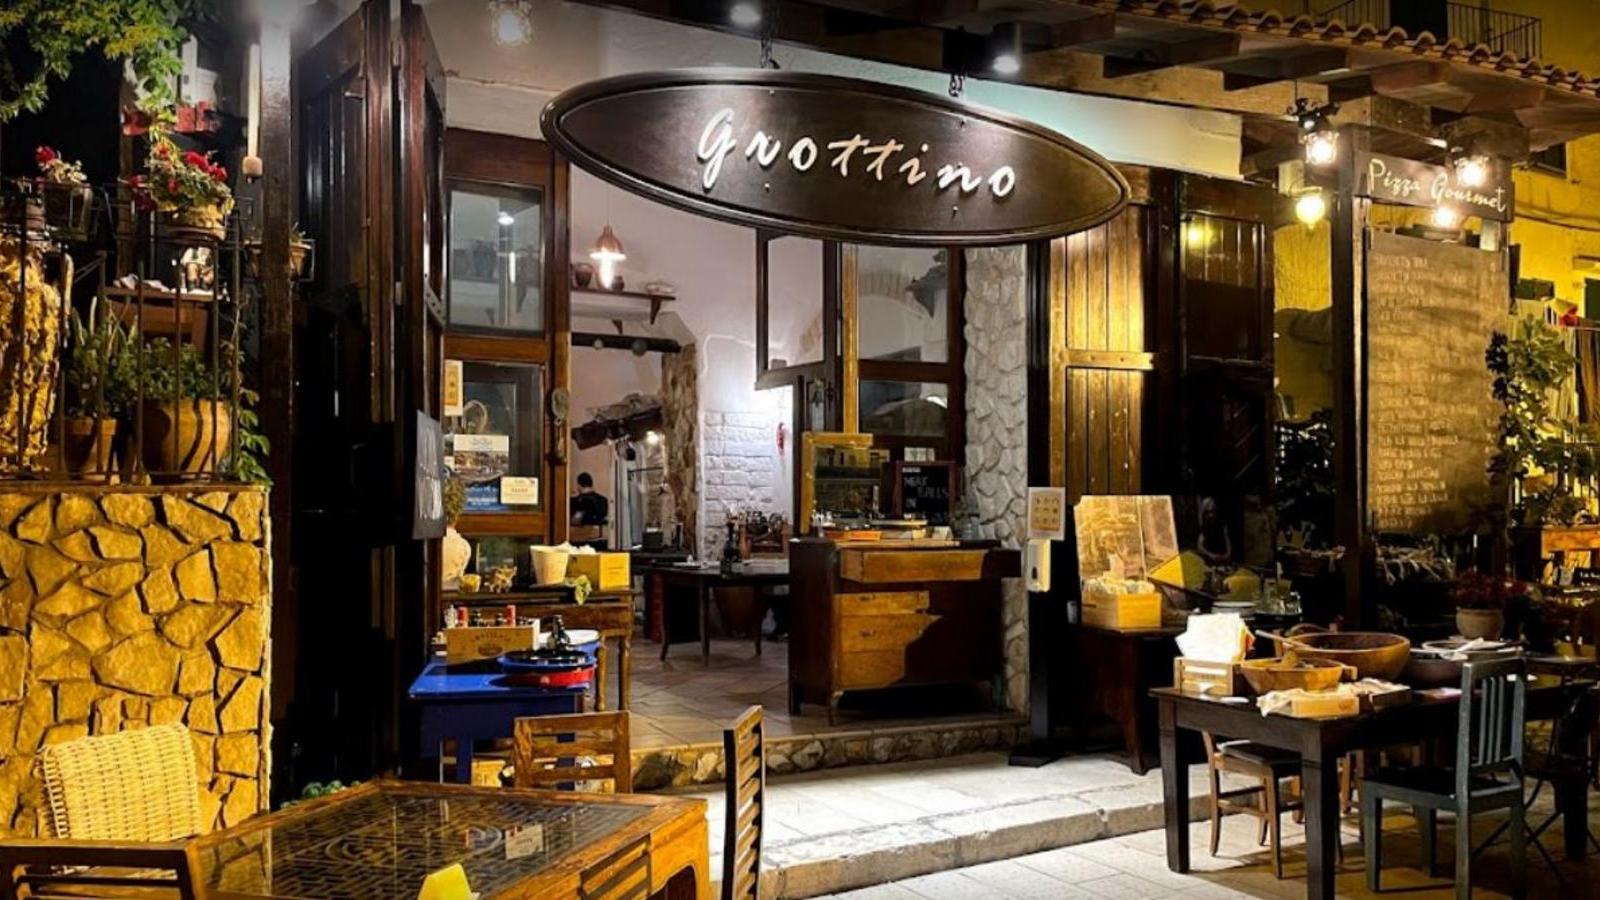 Miglior Ristorante di Vieste - Il Grottino | Localtourism.it